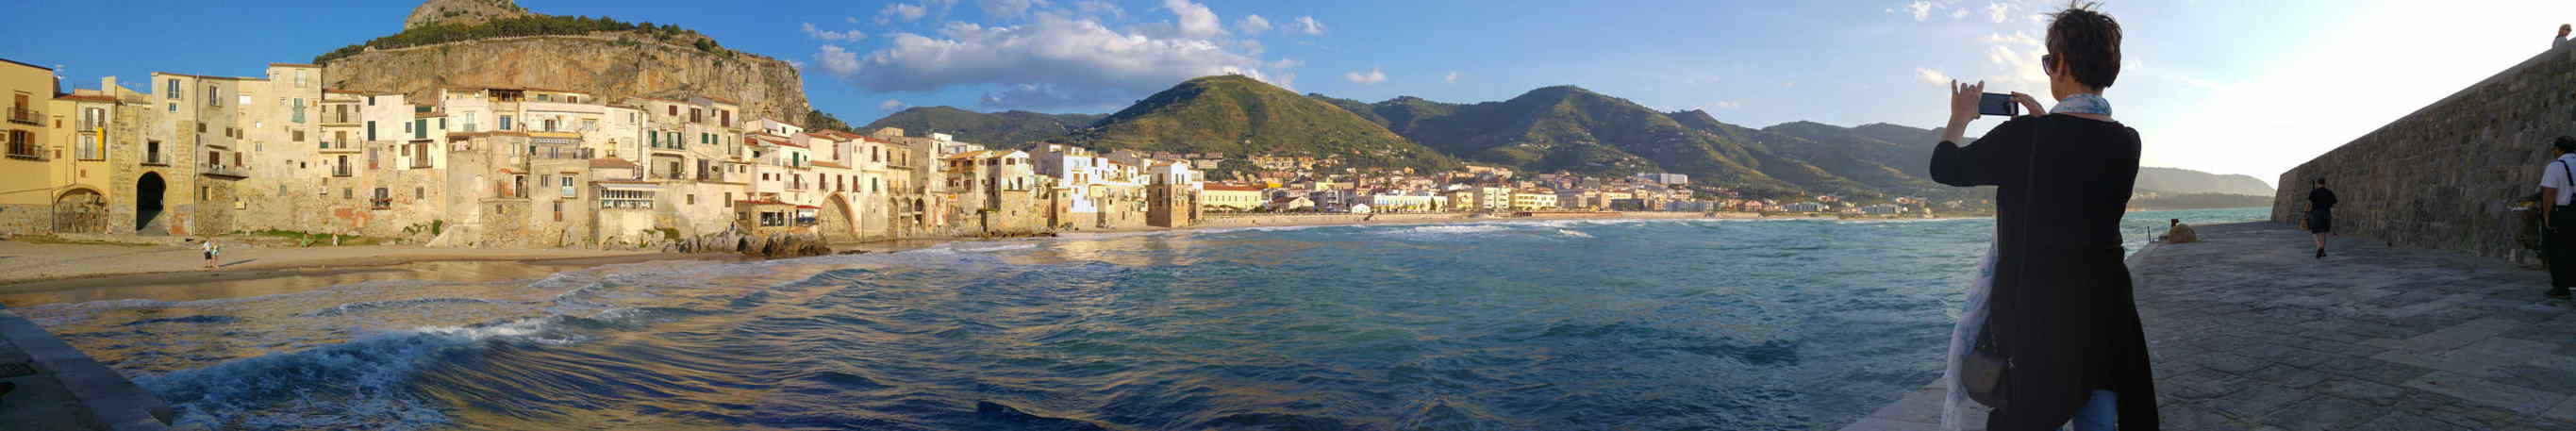 Playa y puerto viejo de Cefalù - Panorámica al atardecer